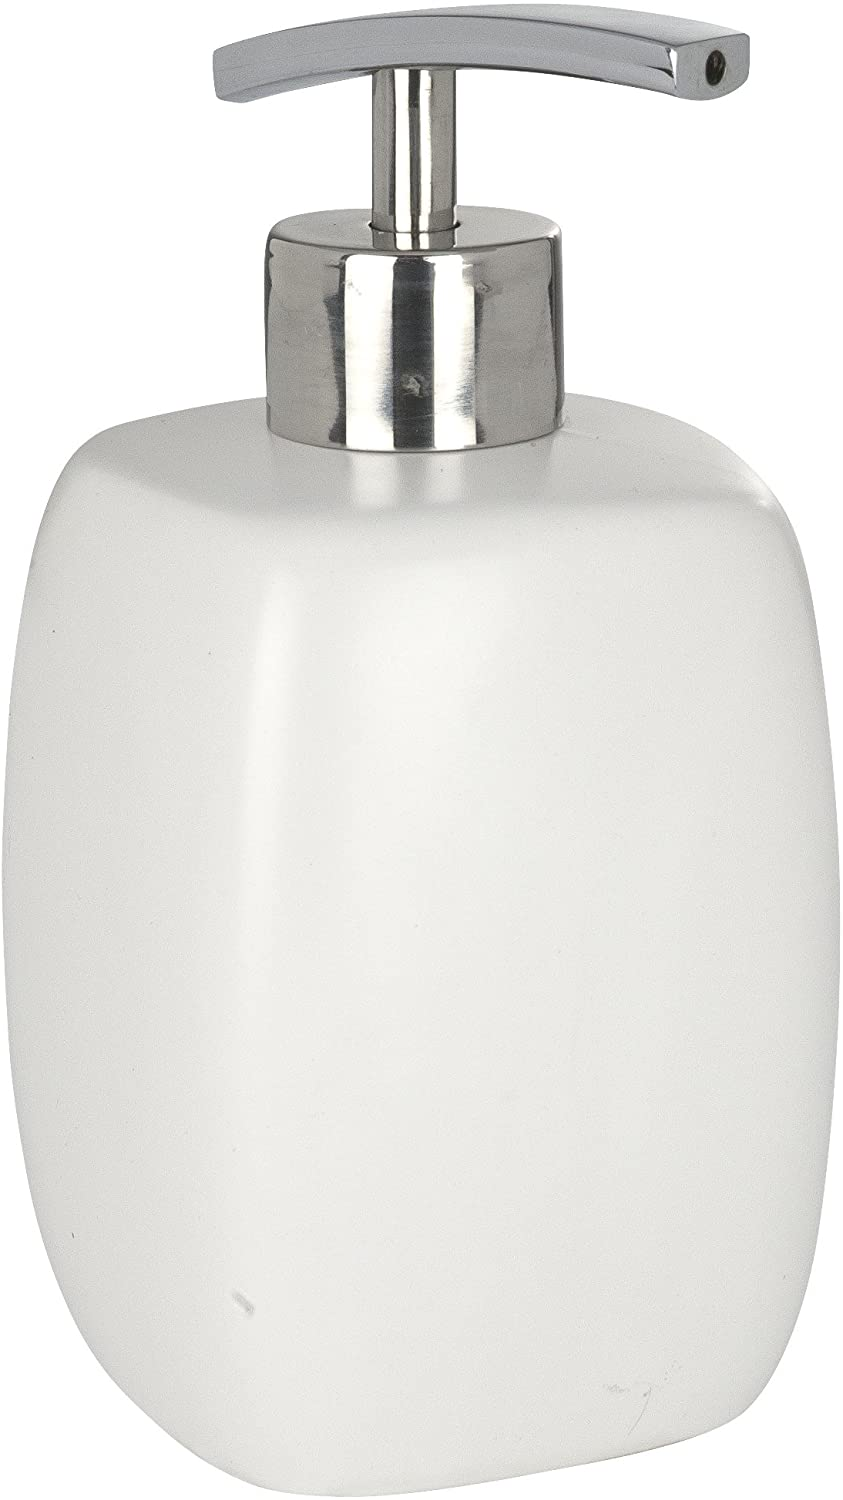 Seifenspender Faro White - Flüssigseifen-Spender, Spülmittel-Spender Fassungsvermögen: 0.44 l, Keramik, 8 x 15 x 8 cm, Weiß